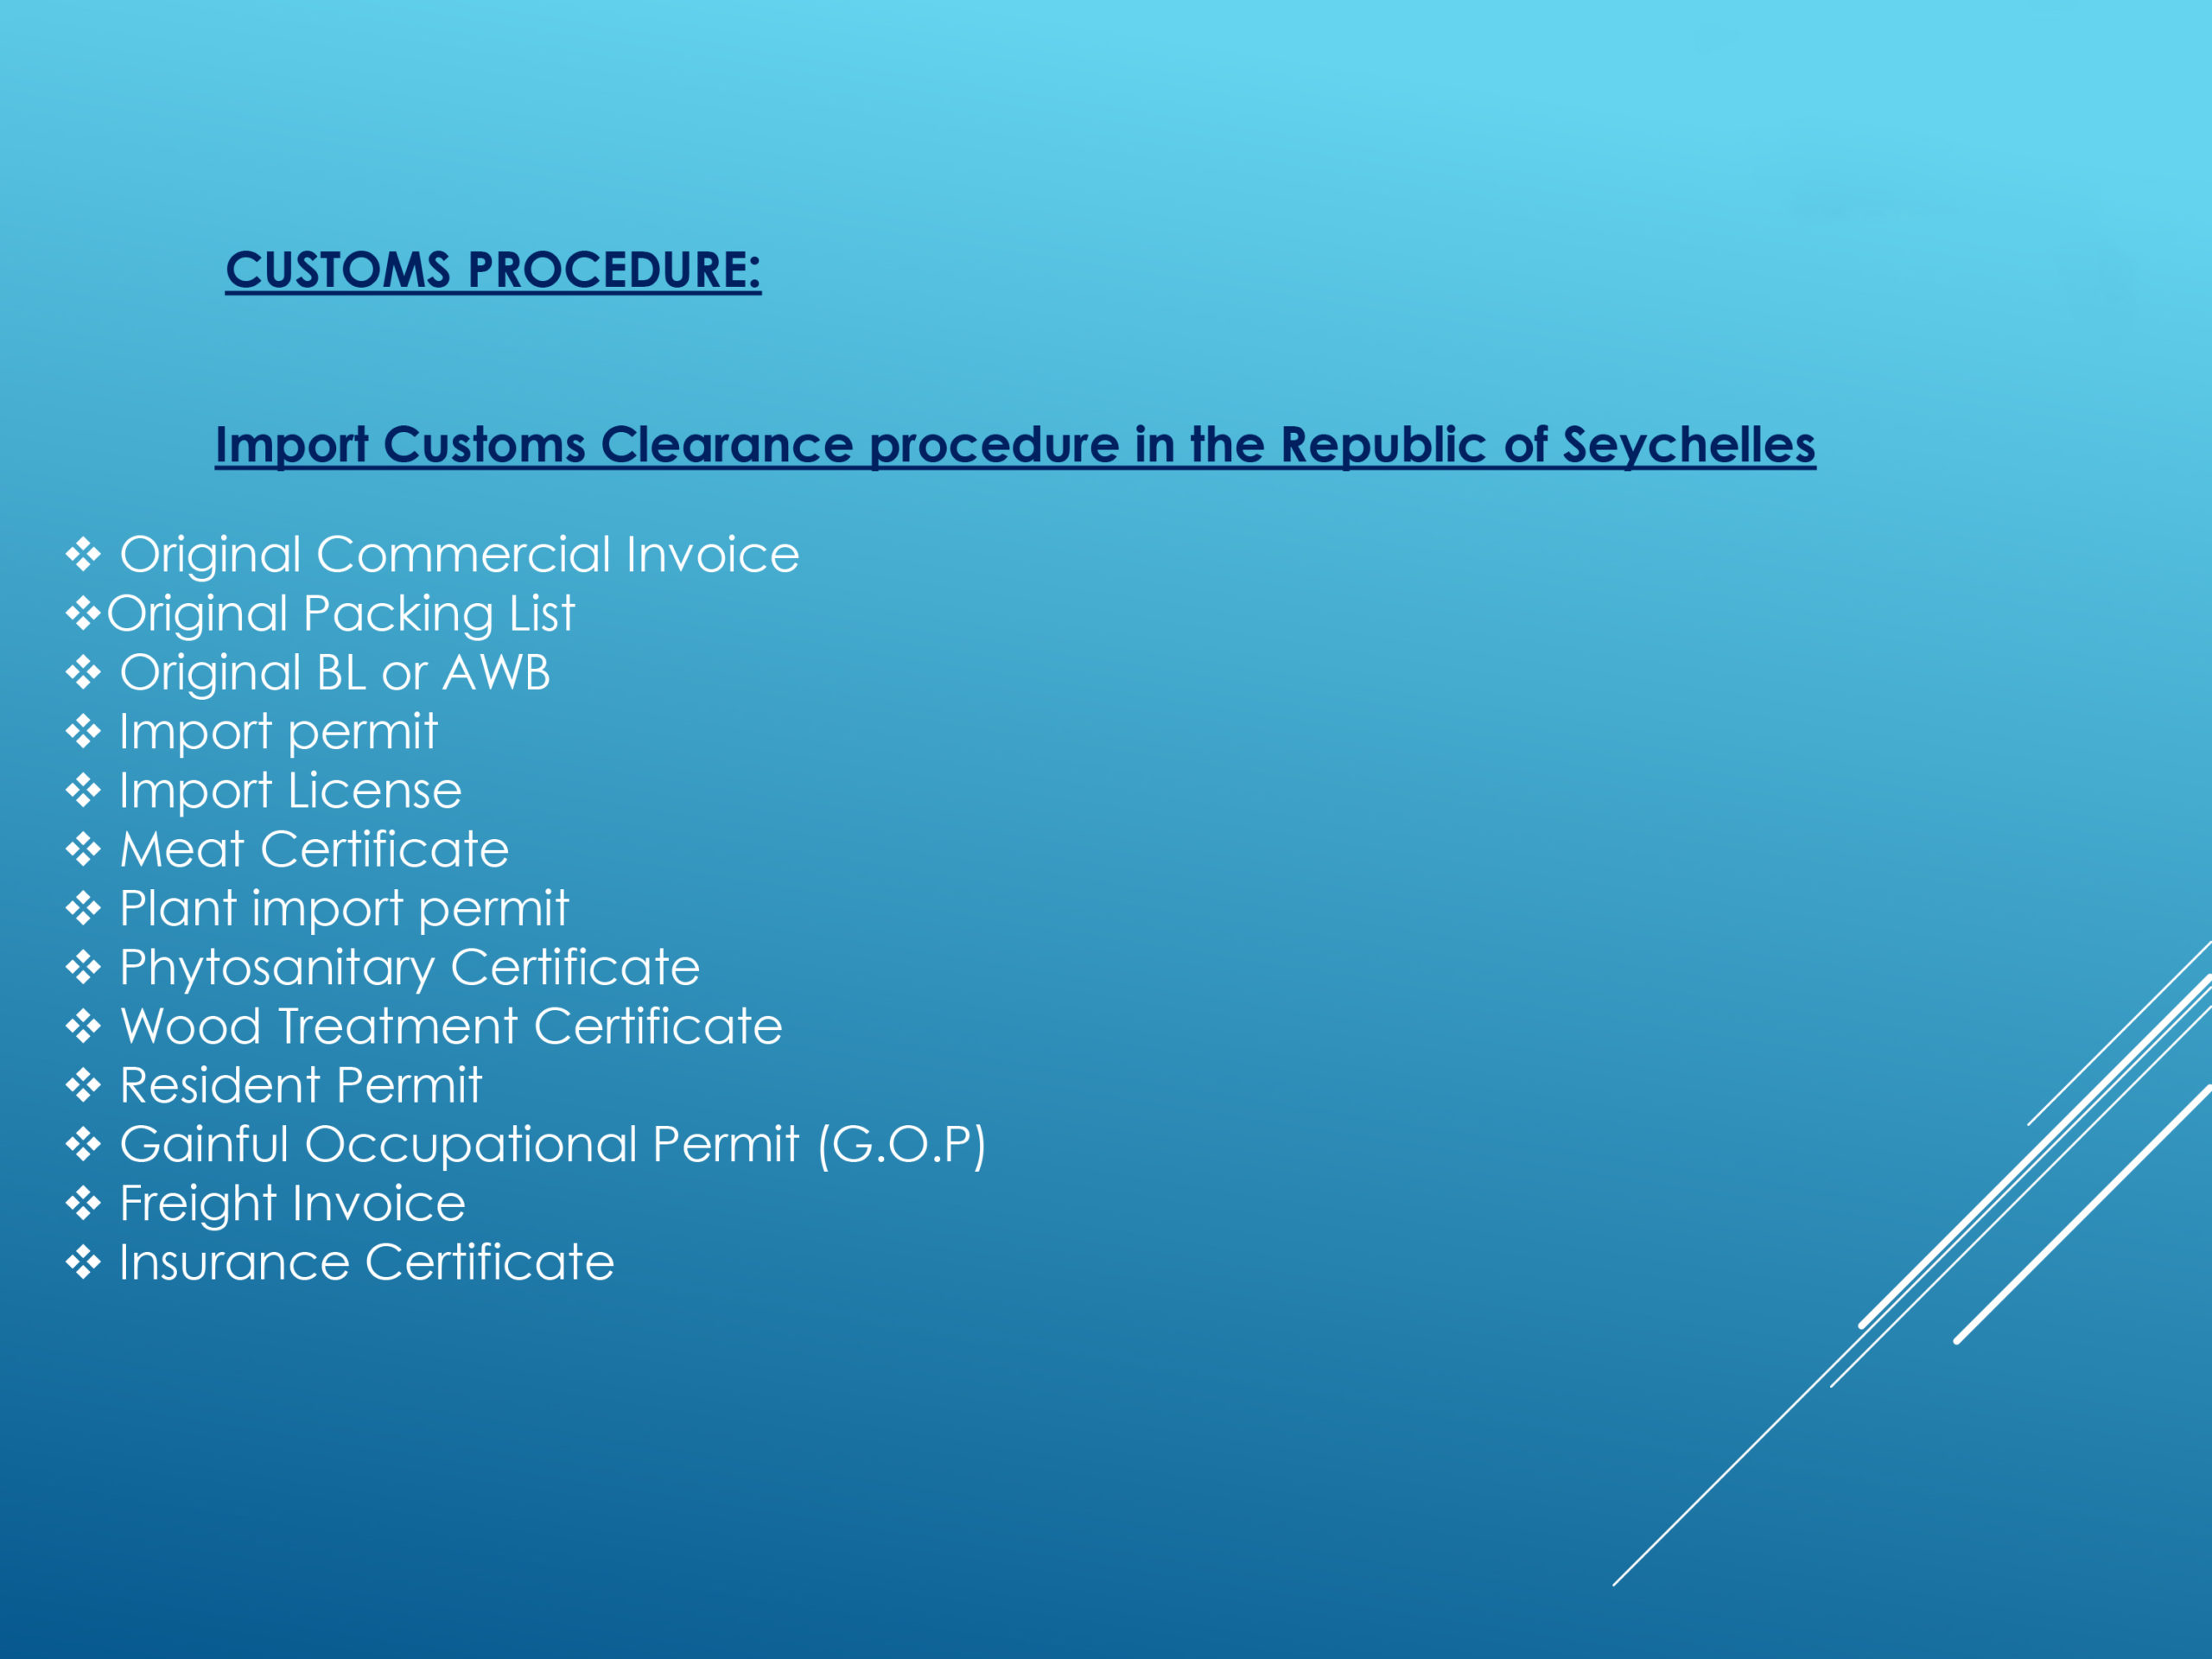 Express_Logistics_Customs_procedures_Seychelles_p2